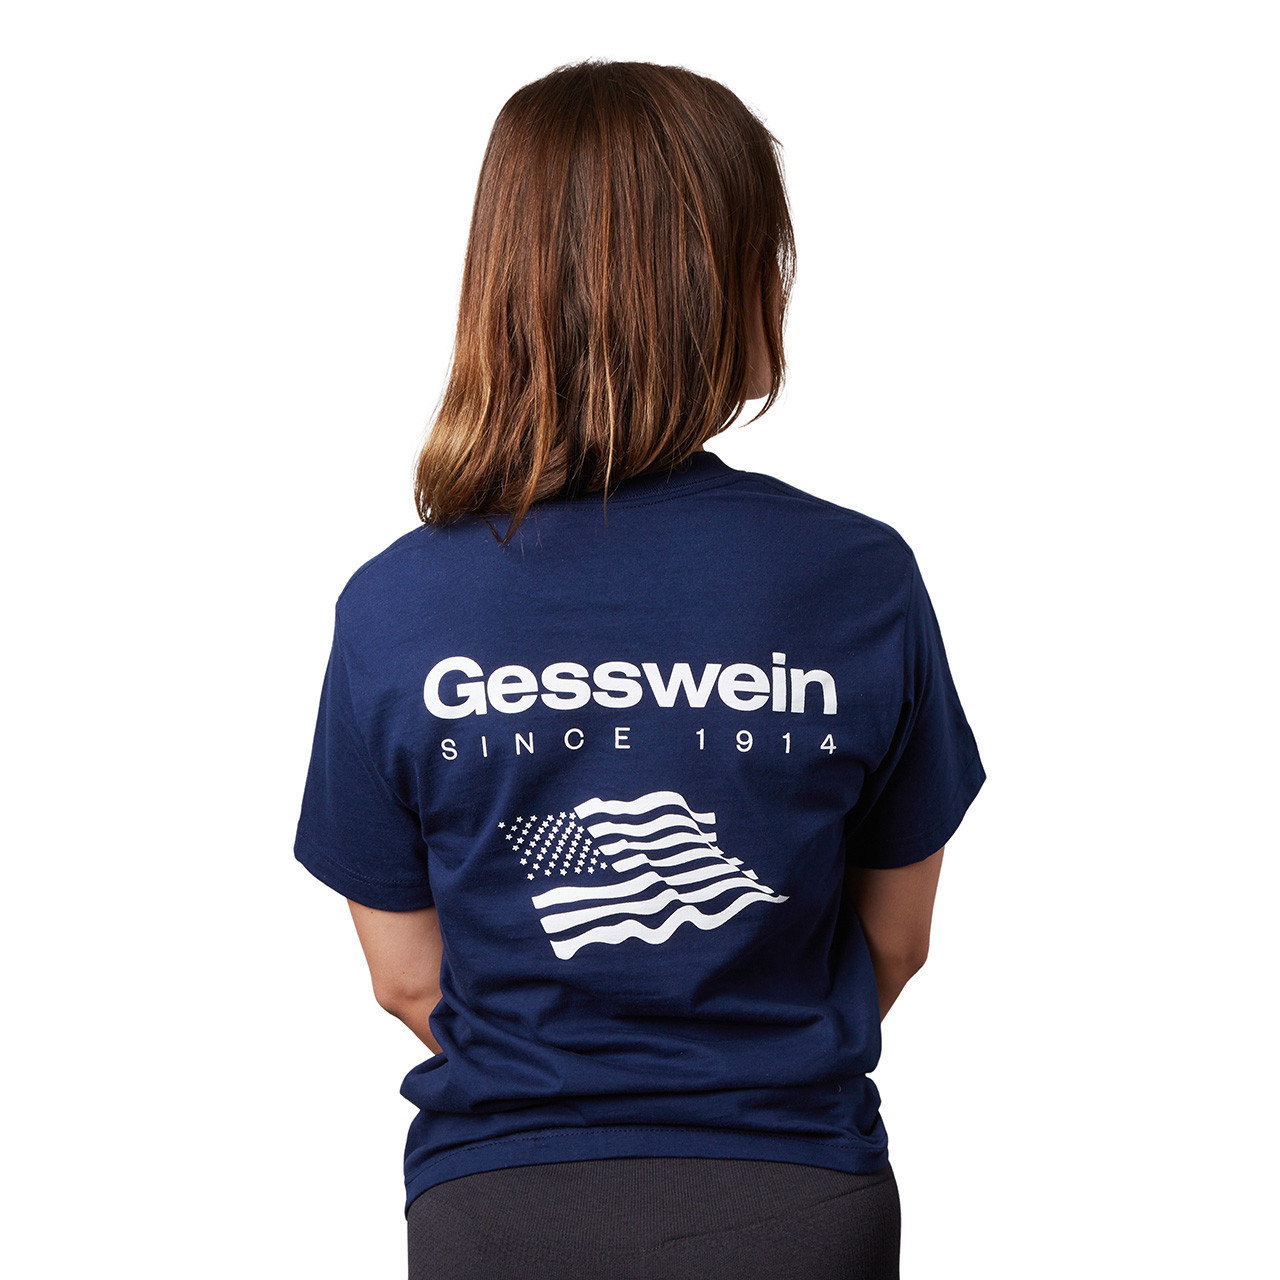 Gesswein USA T-Shirt - Medium